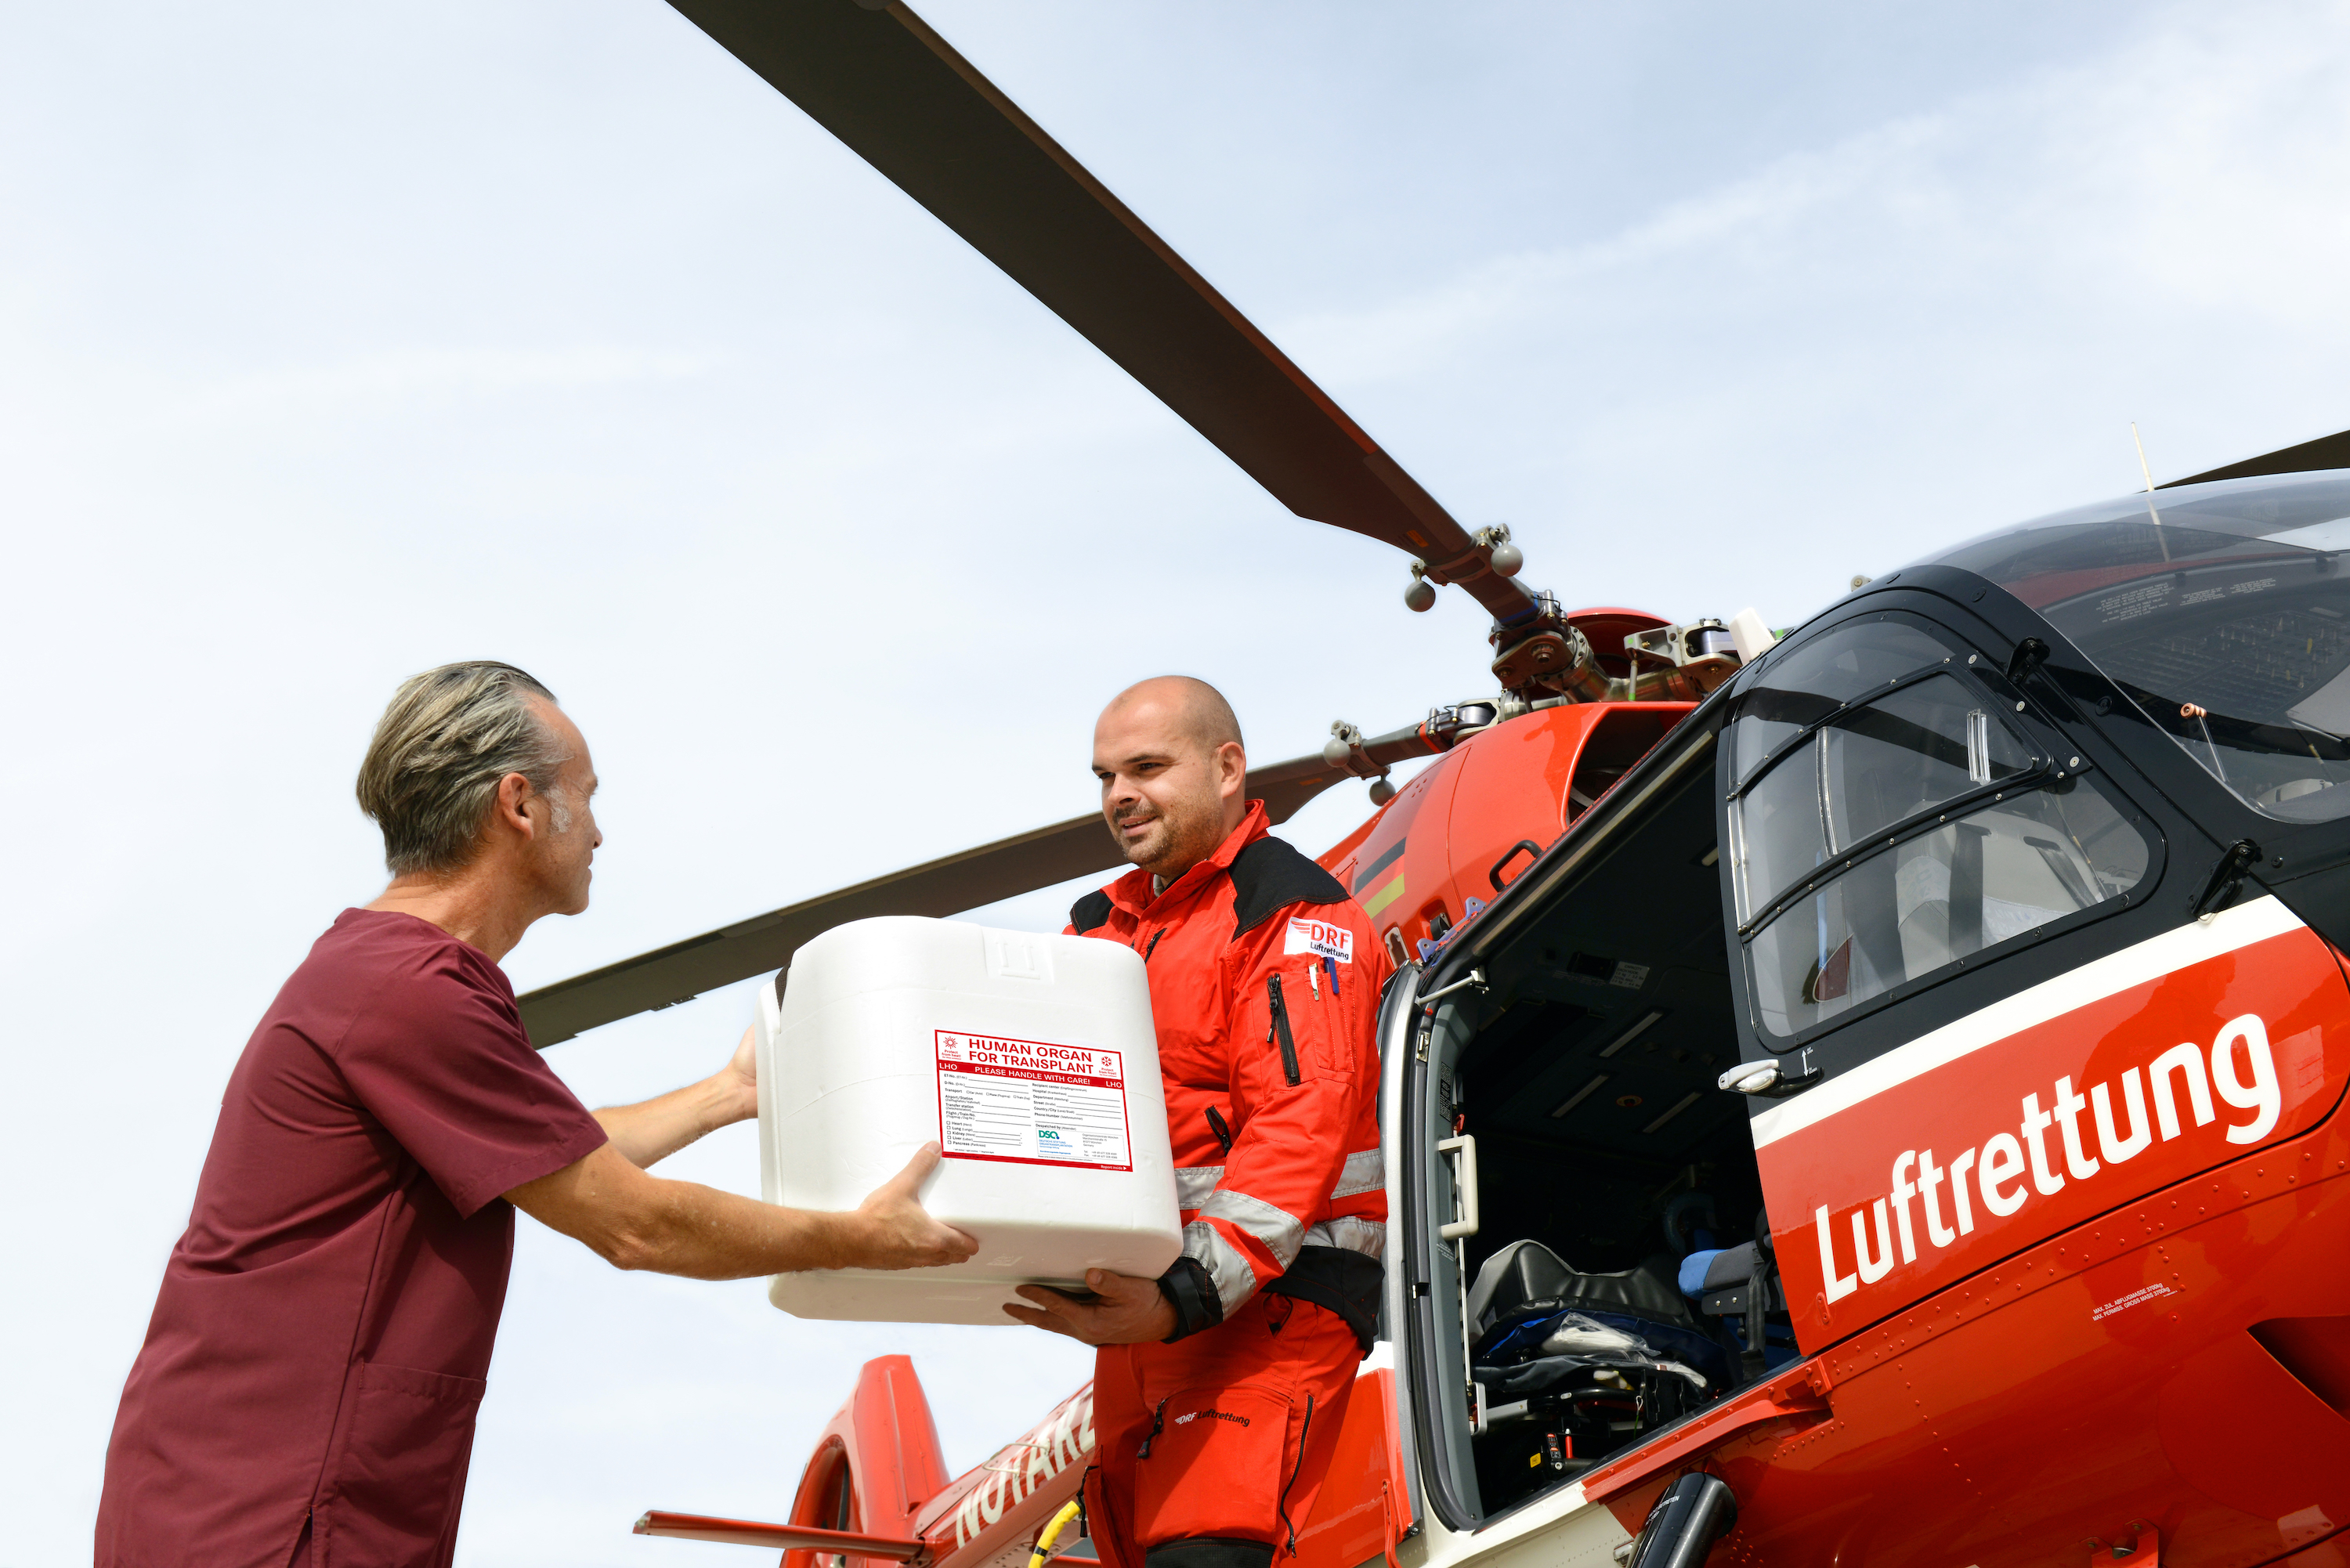 Ein Arzt gibt einem Sanitäter der Luftrettung eine Organ-Transportbox. Dahinter ist ein Hubschrauber der Luftrettung zu sehen.